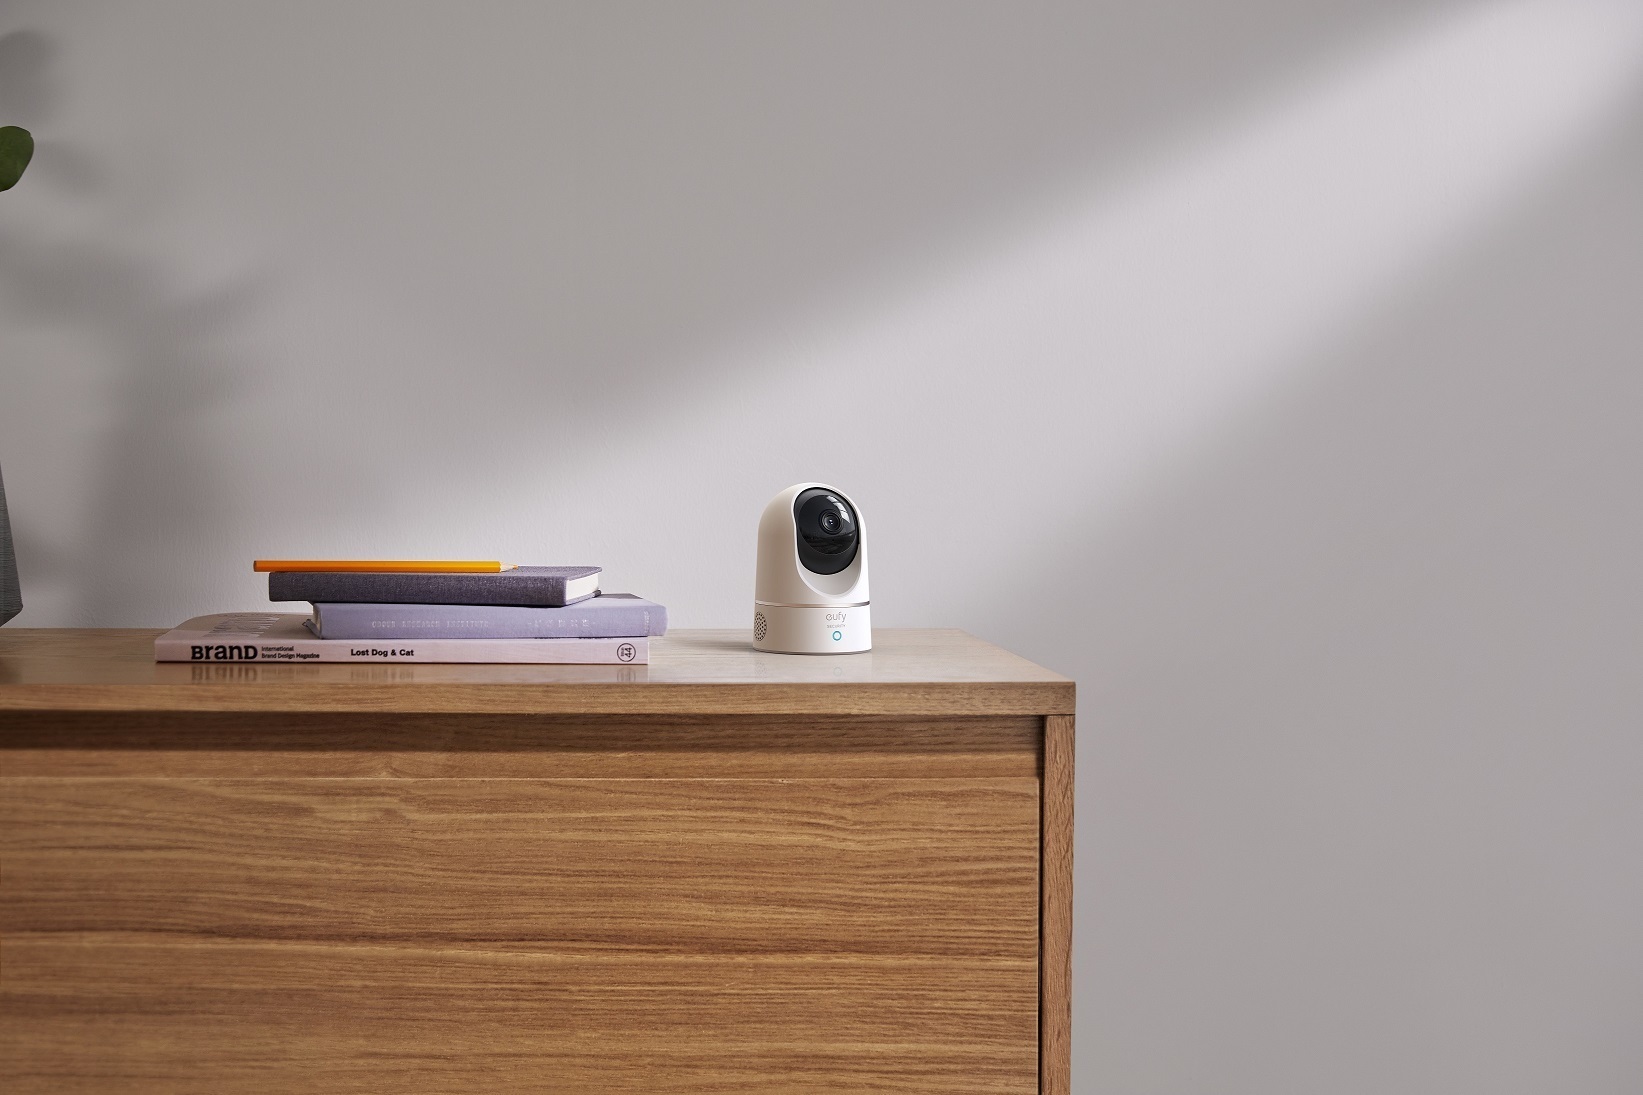 Yapay Zeka özellikli Akıllı Güvenlik Kameraları neler sunuyor?